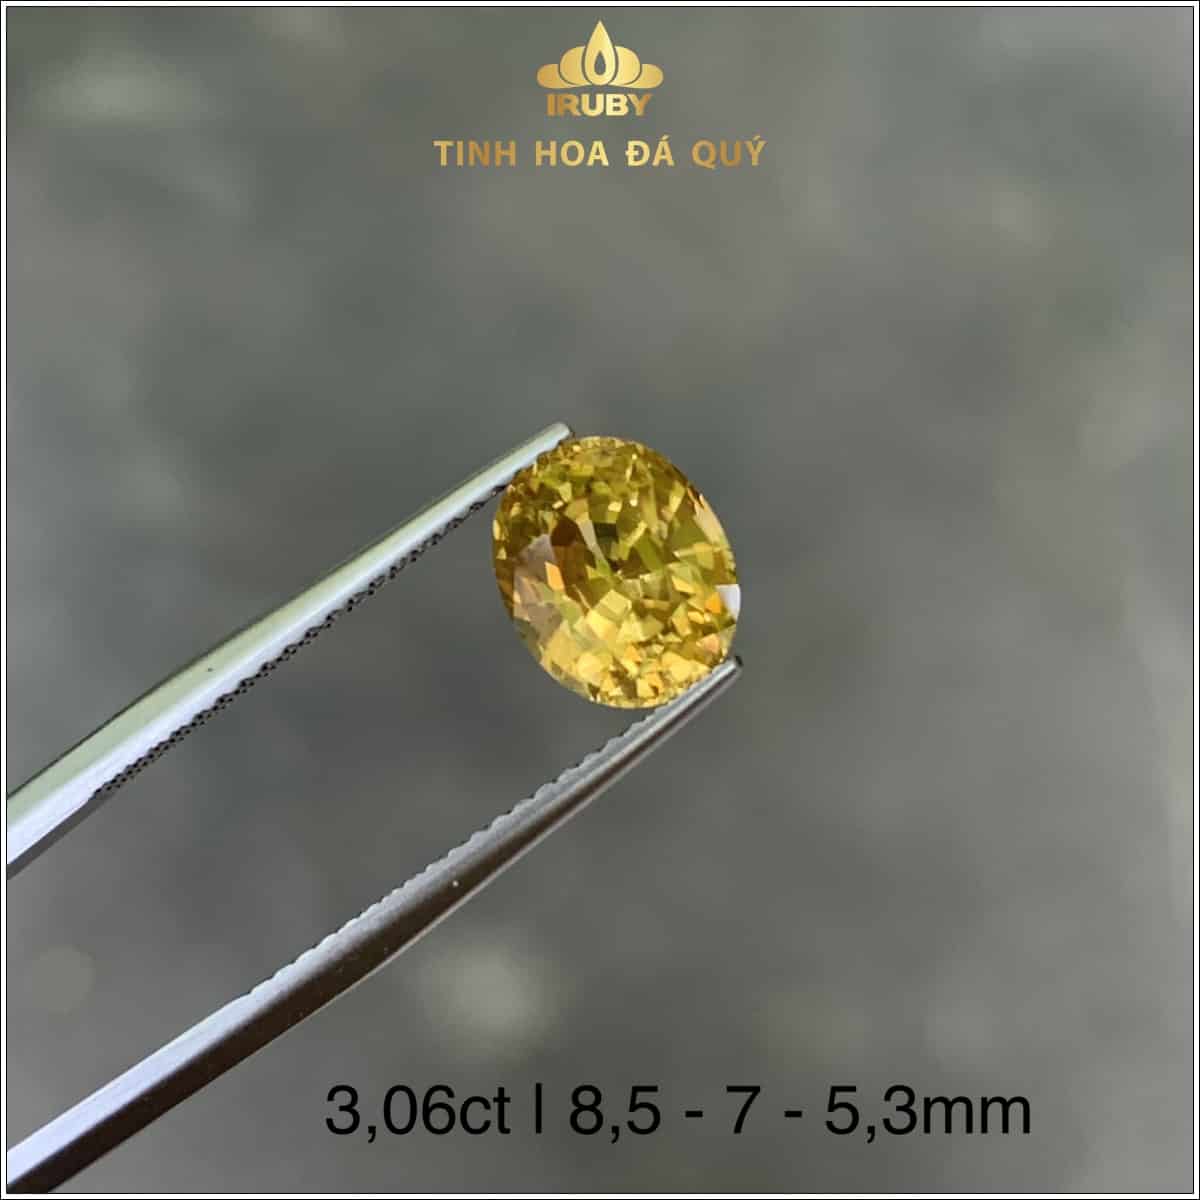 Viên đá Zircon tự nhiên màu vàng chanh 3,06ct - IRZC 237306 hình ảnh